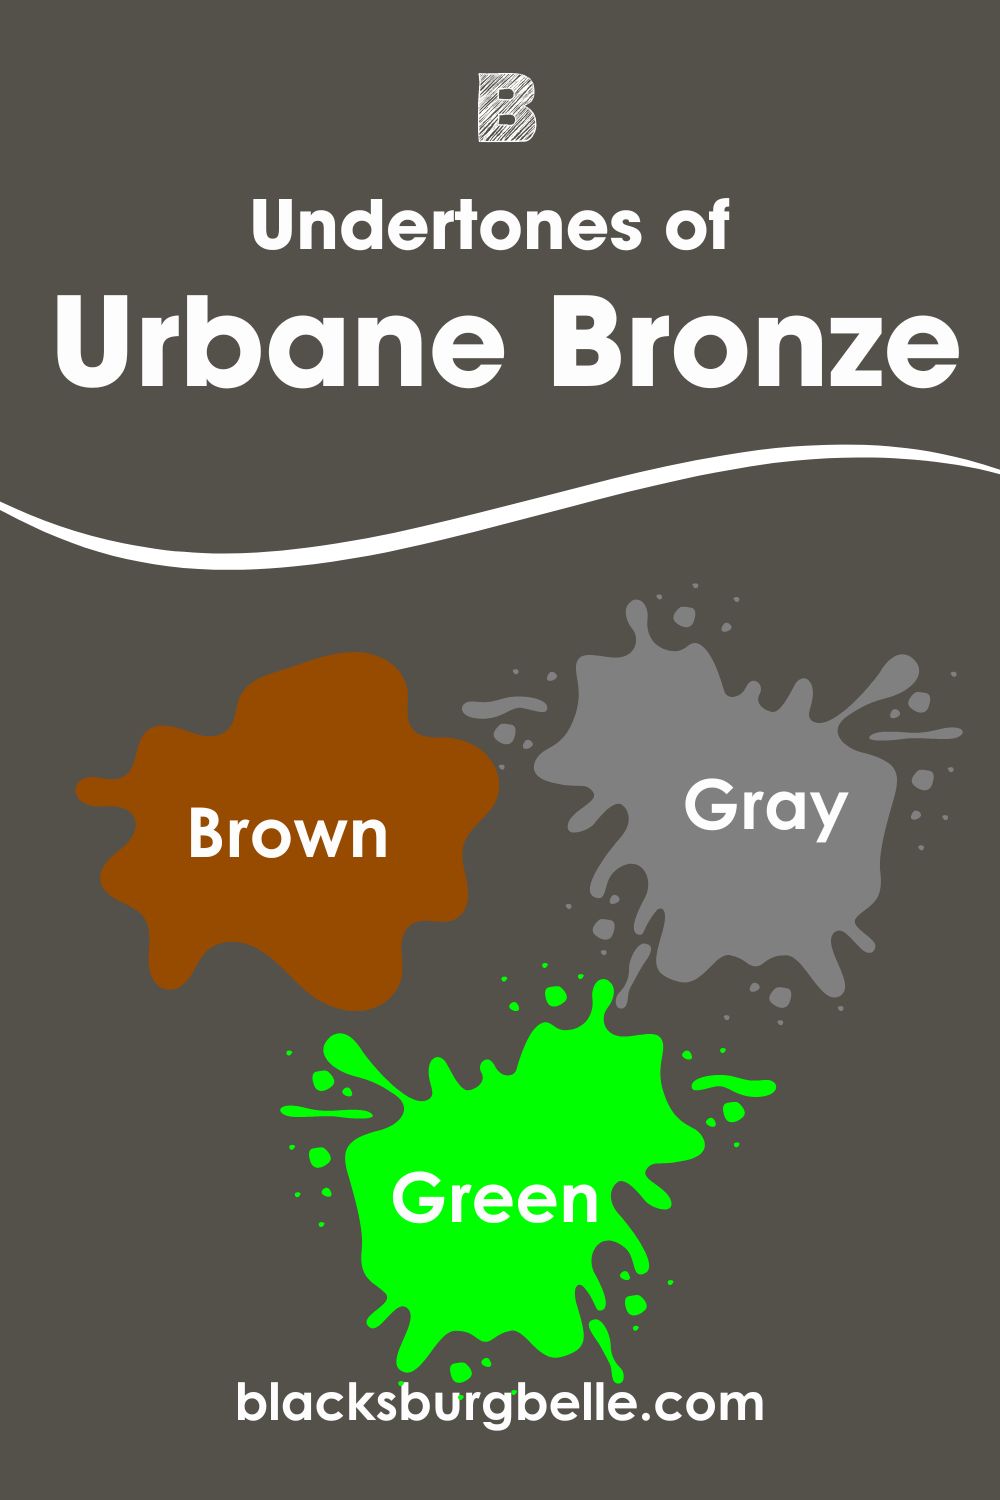 Undertones of Urbane Bronze